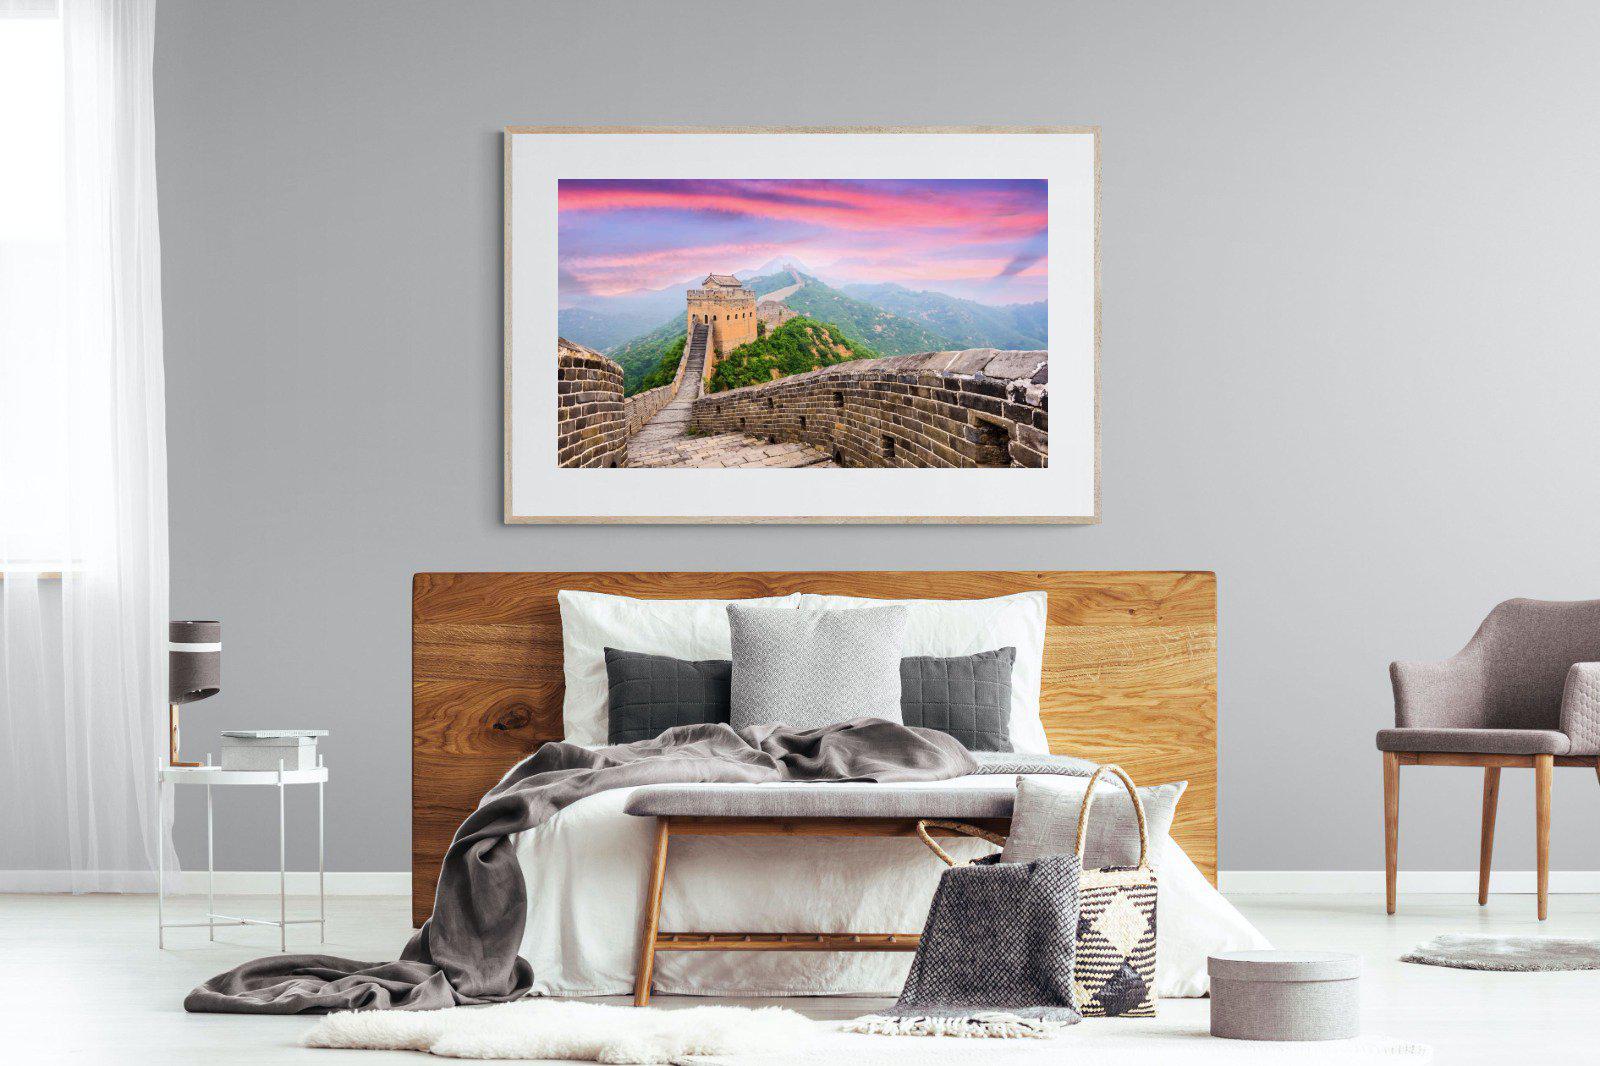 Great Wall-Wall_Art-150 x 100cm-Framed Print-Wood-Pixalot